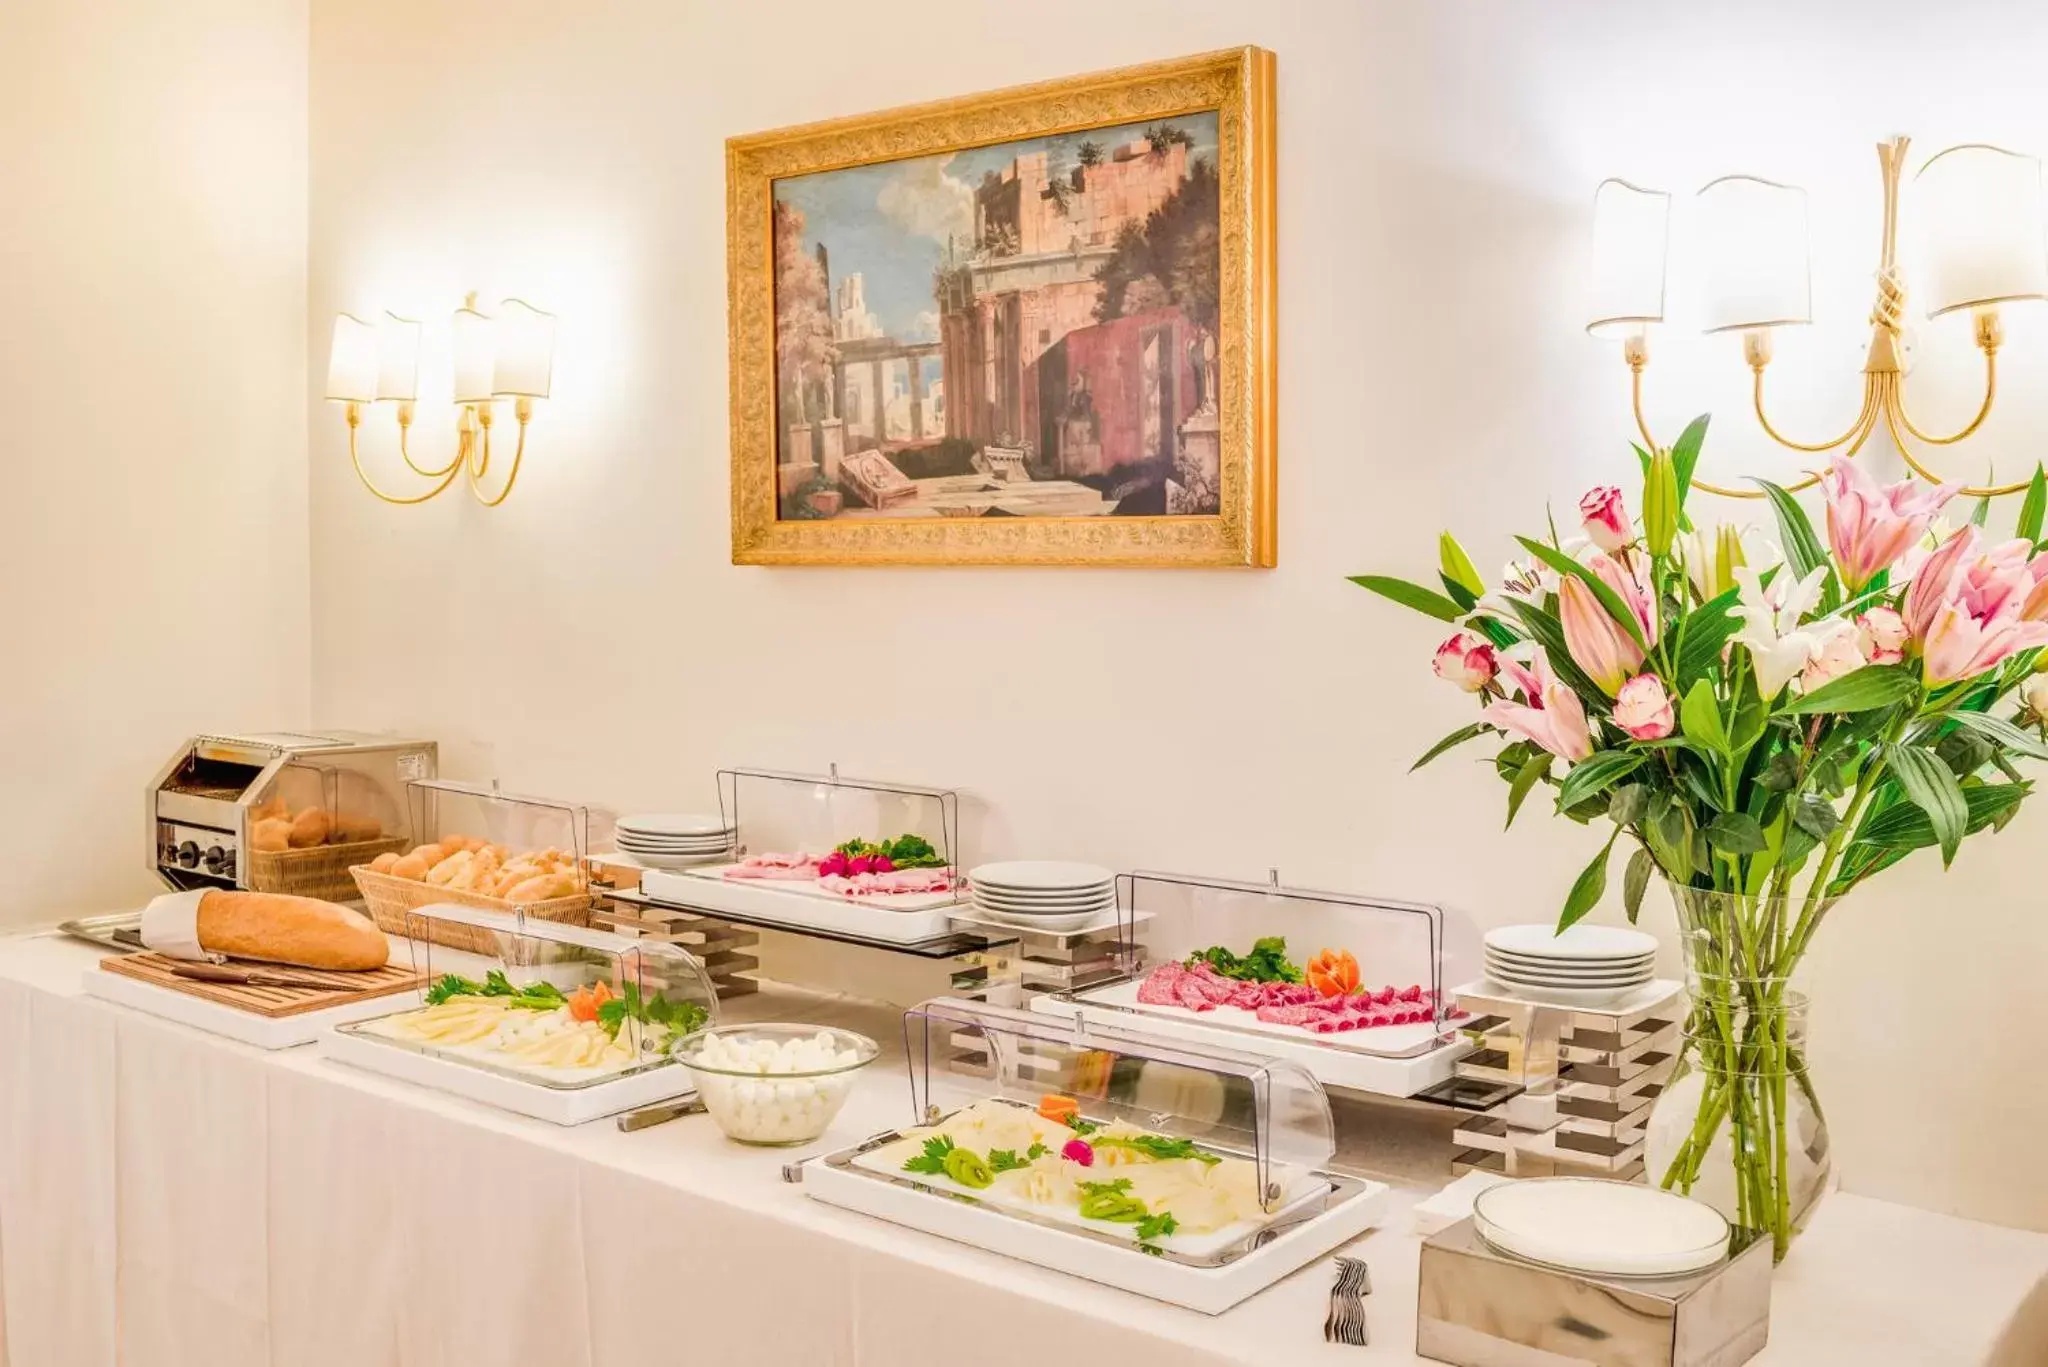 Buffet breakfast, Food in Raeli Hotel Archimede